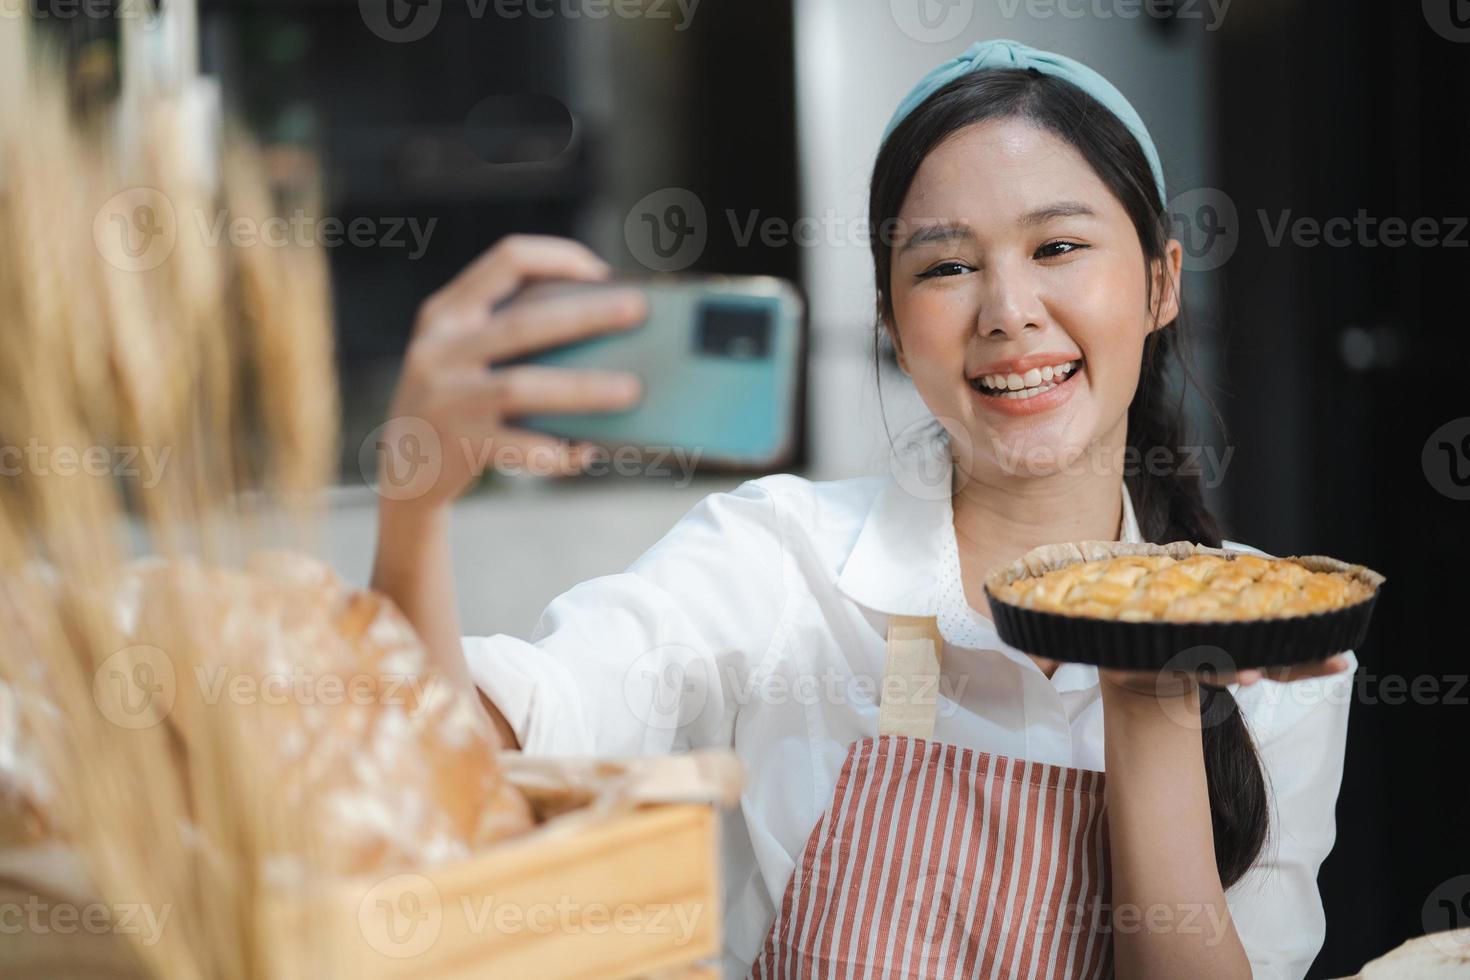 giovane donna indossa grembiule assunzione autoscatto foto con fatti in casa torta nel cucina. ritratto di bellissimo asiatico femmina cottura al forno dolce e avendo divertimento assunzione foto di smartphone per in linea sociale. casa cucina.